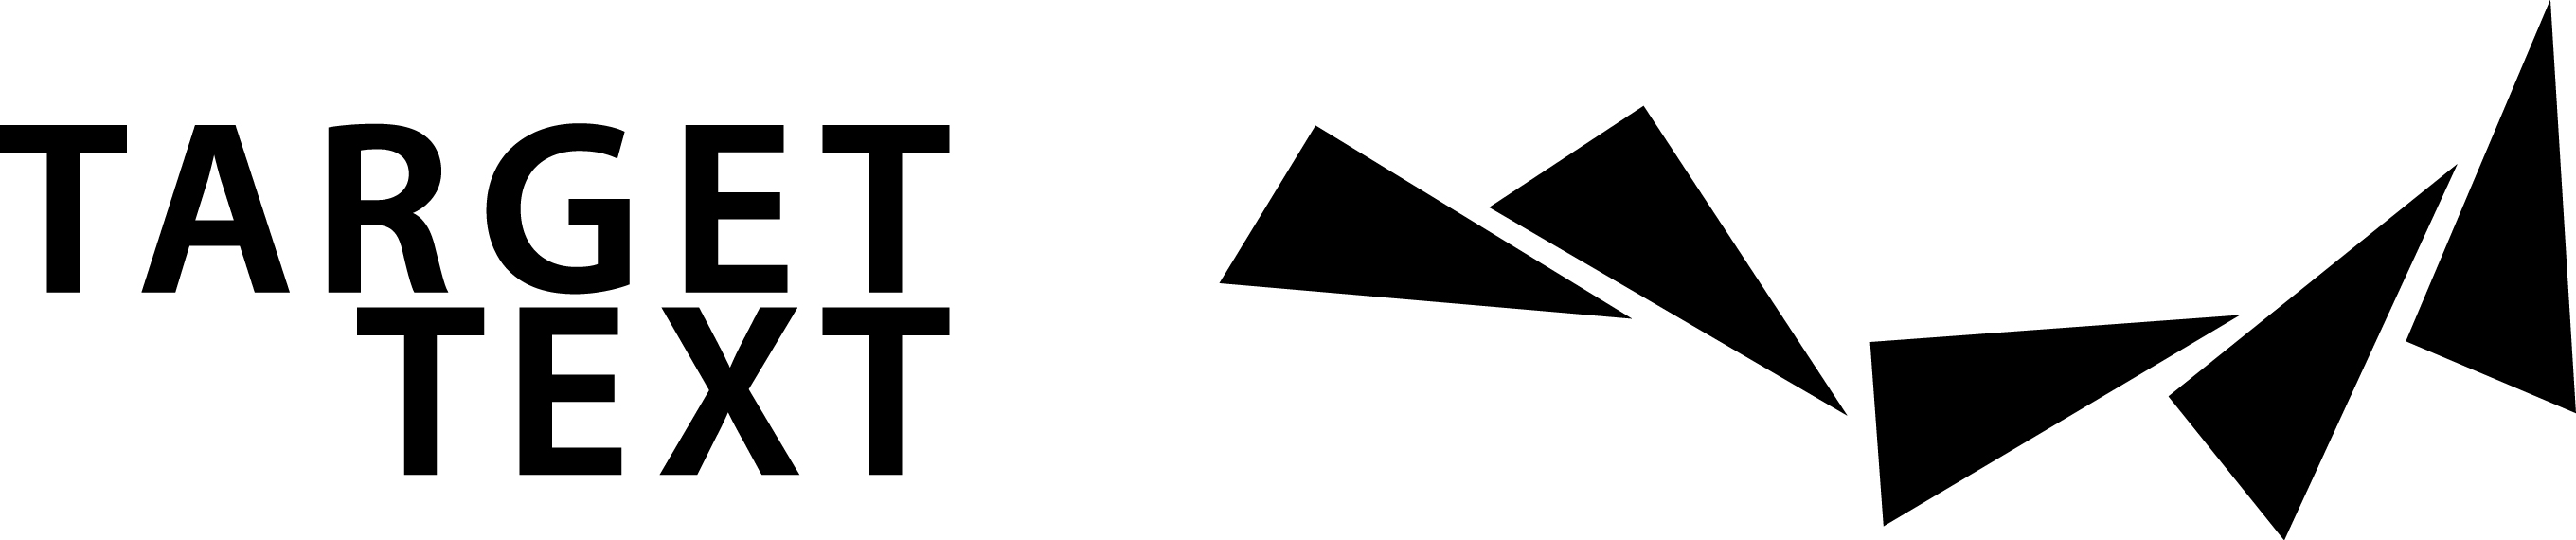 TARGET TEXT - Logo